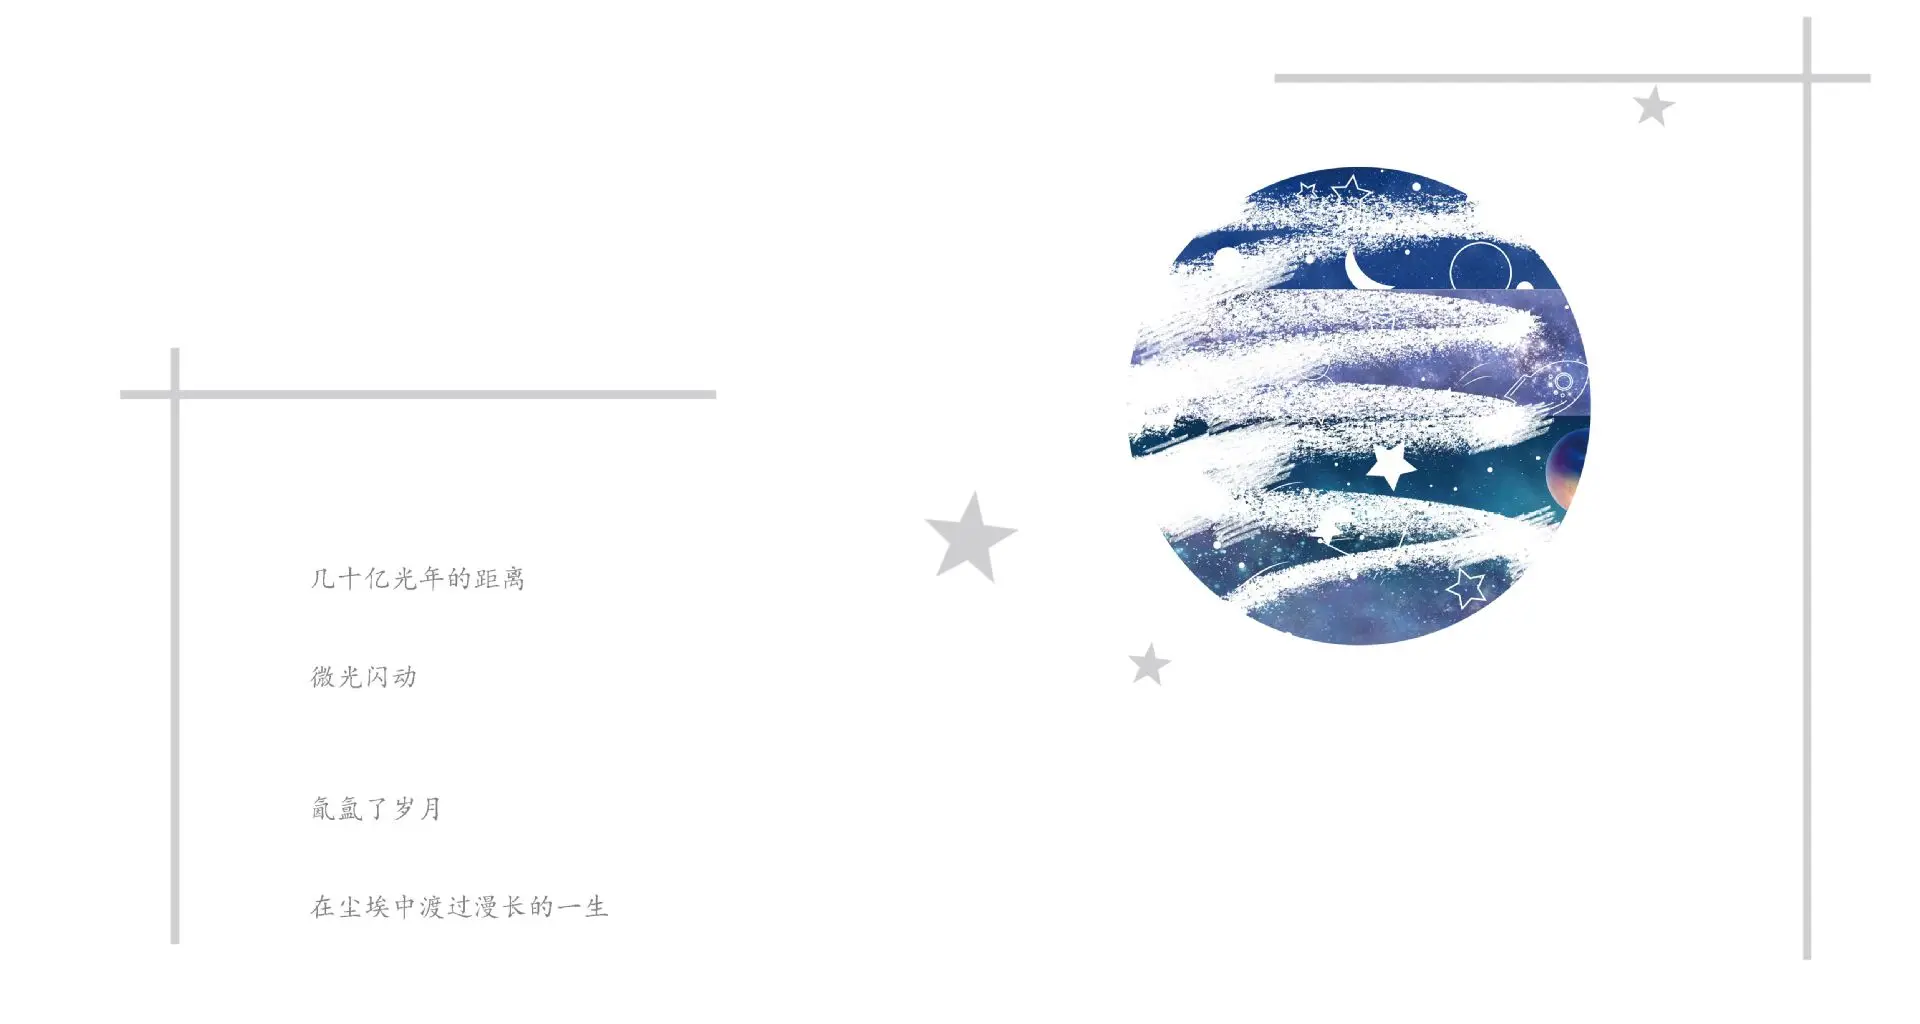 10 компл./1 лот клейкая лента из рисовой бумаги космическая серия звездное небо декоративная клейкая Скрапбукинг DIY Бумага японские наклейки